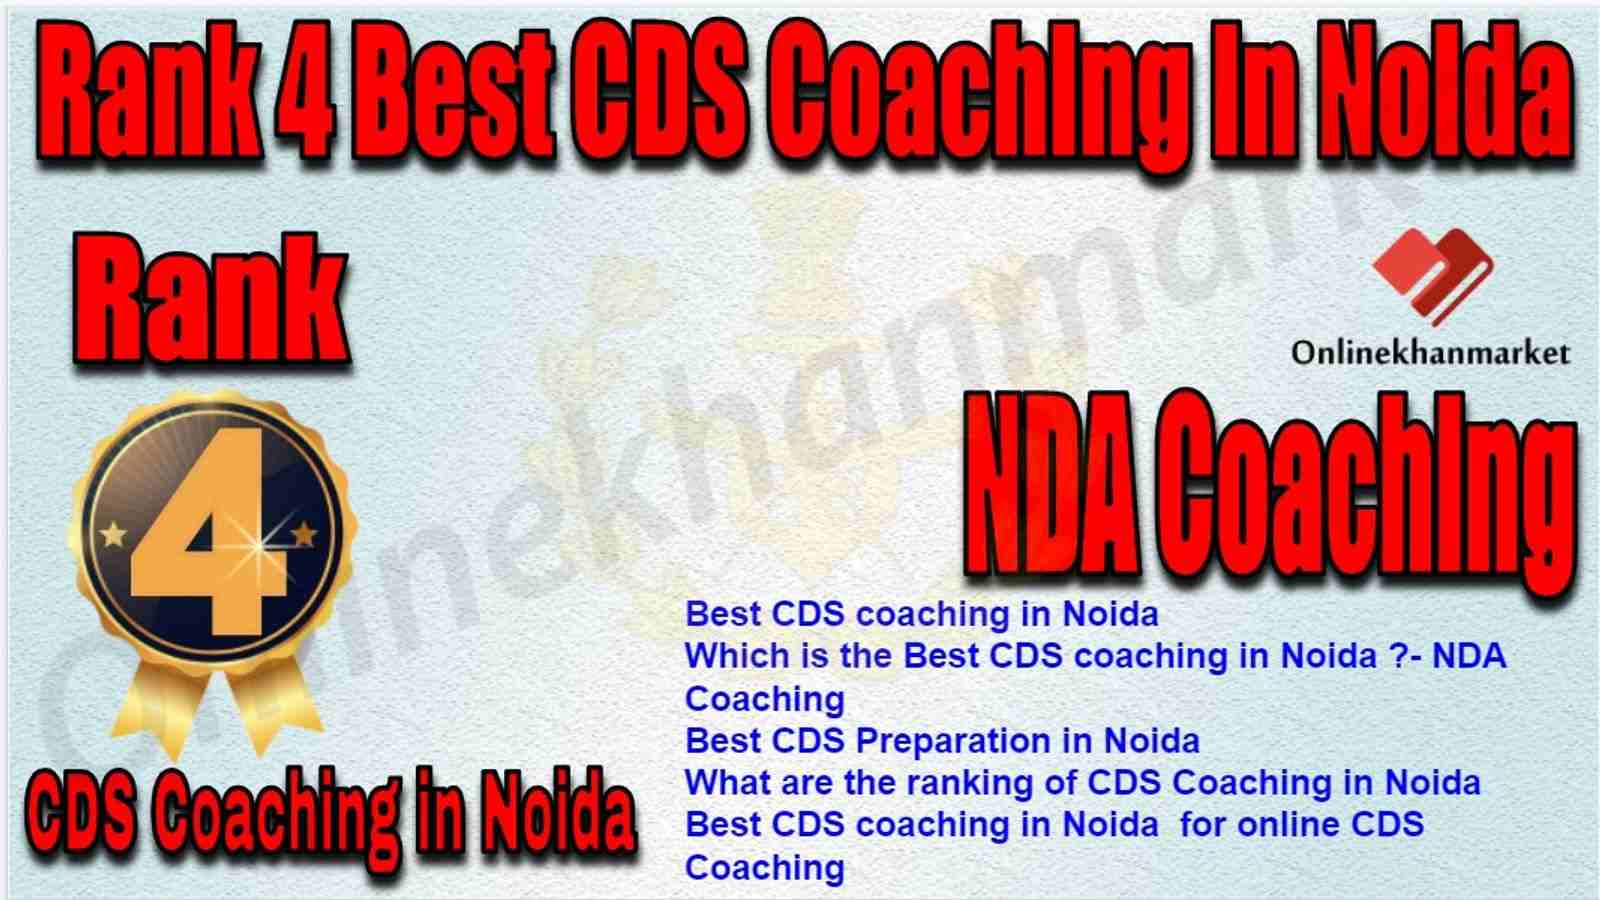 Rank 4 Best CDS Coaching in Noida